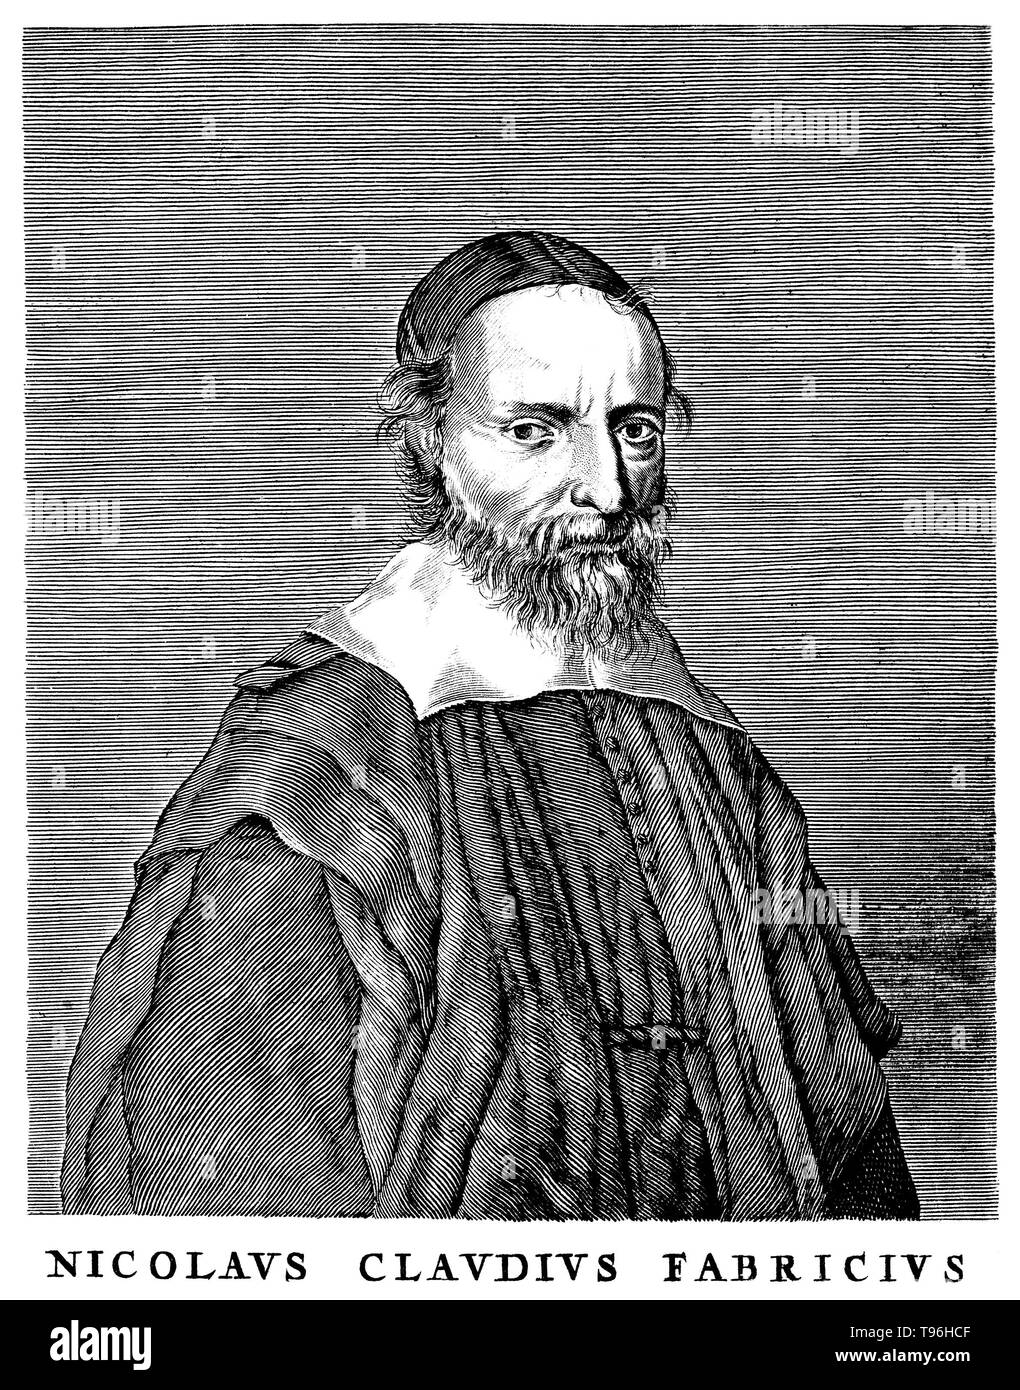 Nicolas-Claude Fabri de Peiresc (Dezember 1, 1580 - Juni 24, 1637) war ein französischer Astronom und Antiquar, der eine breite Übereinstimmung mit Wissenschaftlern gepflegt, und war ein erfolgreicher Organisator der wissenschaftlichen Untersuchung. Die erste Entdeckung der diffusen nebligen Natur der Orionnebel ist in der Regel zu ihm gutgeschrieben, wenn er einen Satz von ihm die Beobachtung am 26. November 1610. Er war ein Förderer von Kunst und Wissenschaft, Studium der Fossilien und unterstützt der Astronom Pierre Gassendi von 1634 bis 1637. Stockfoto